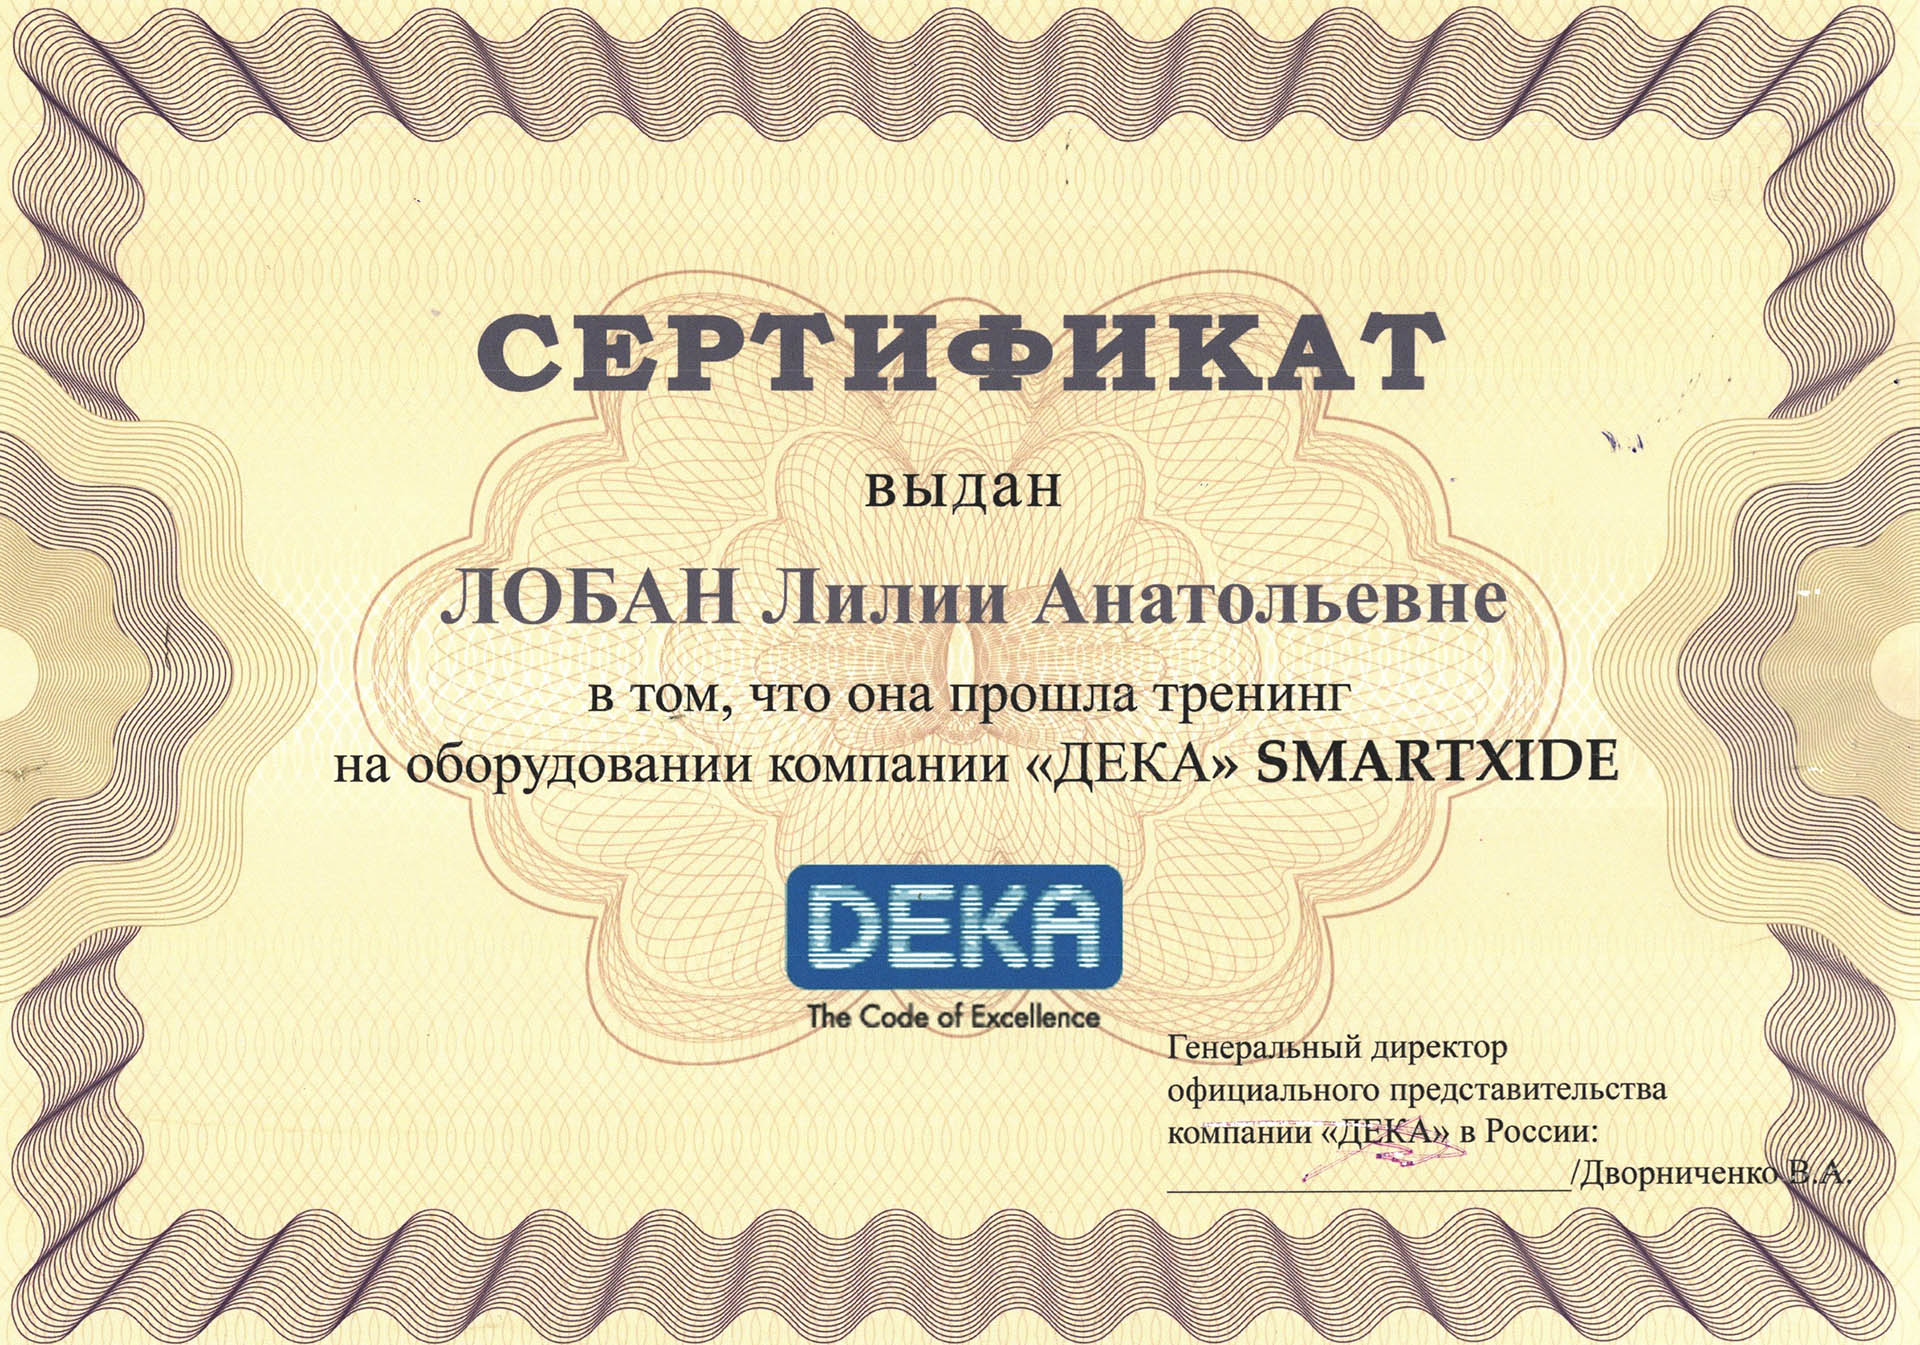 Сертификат — Тренинг на оборудовании компании «Дека» Smartxide. Живоглазова Лилия Анатольевна